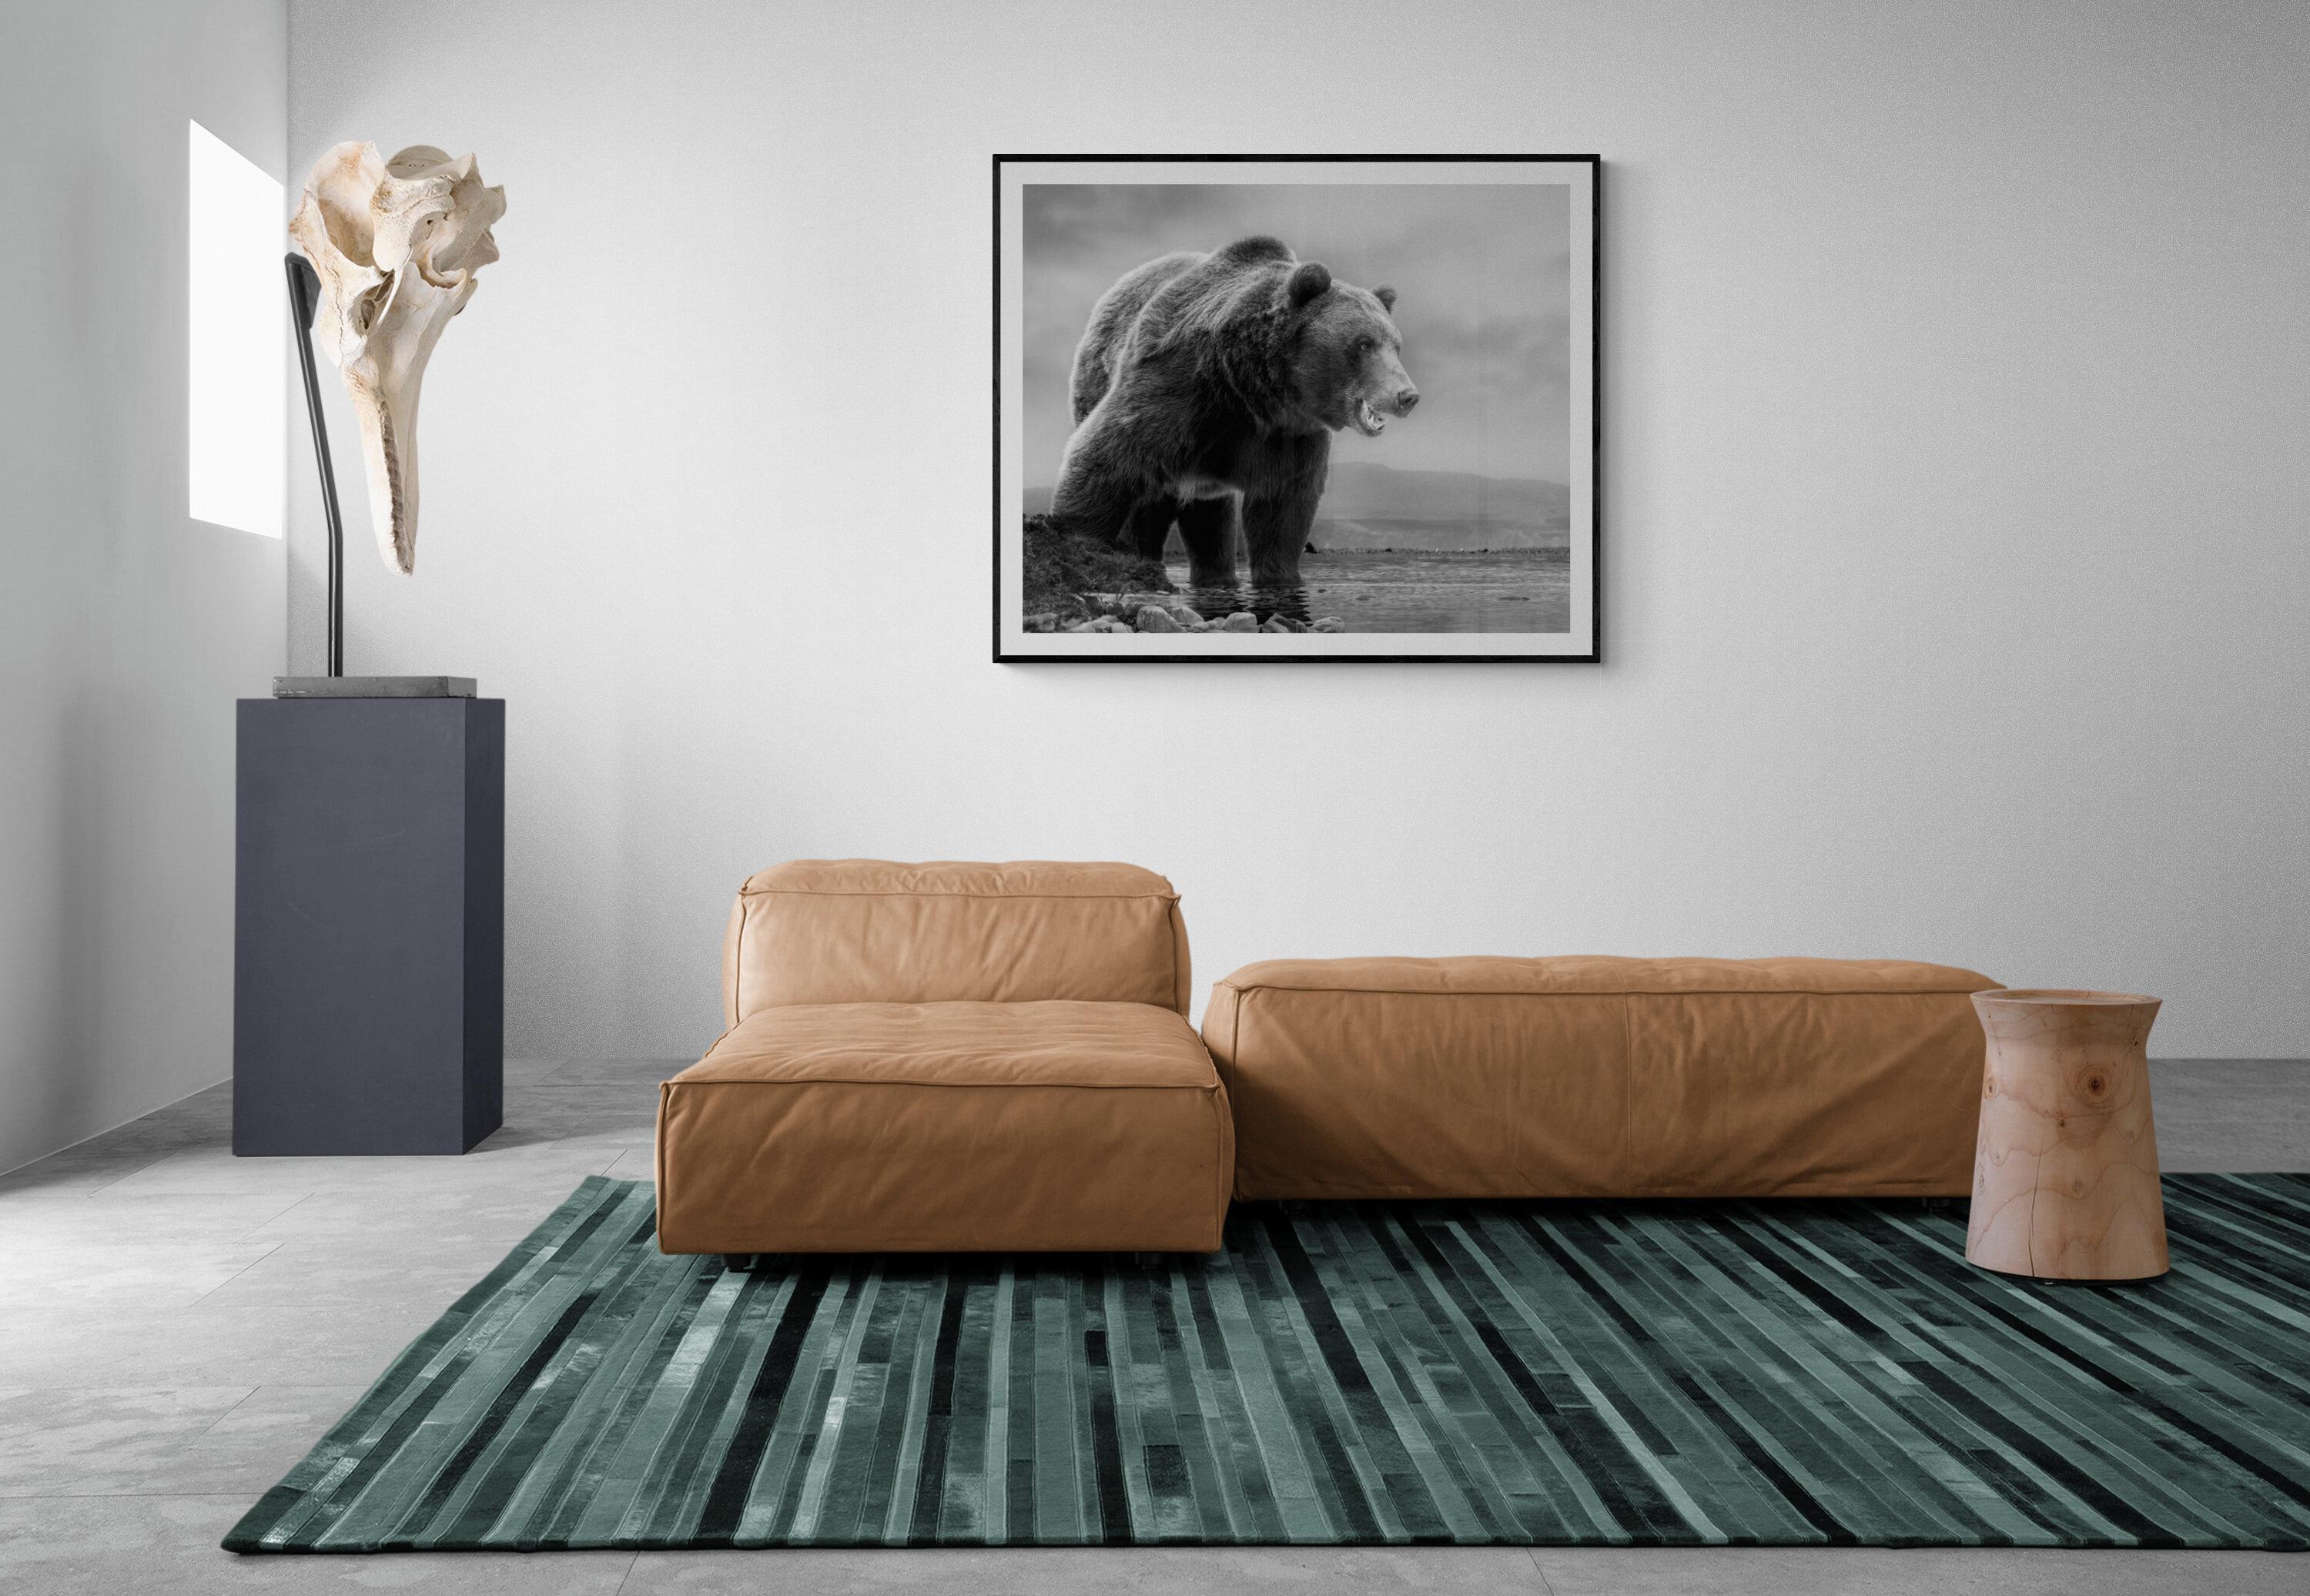 Il s'agit d'une photographie contemporaine d'un ours Kodiak.  
Ceci a été tourné sur l'île de Kodiak en 2019. 
36x48 
Non signé 
Papier pigmentaire d'archivage
Encadrement disponible. Renseignez-vous sur les tarifs. 


Shane Russeck s'est forgé une